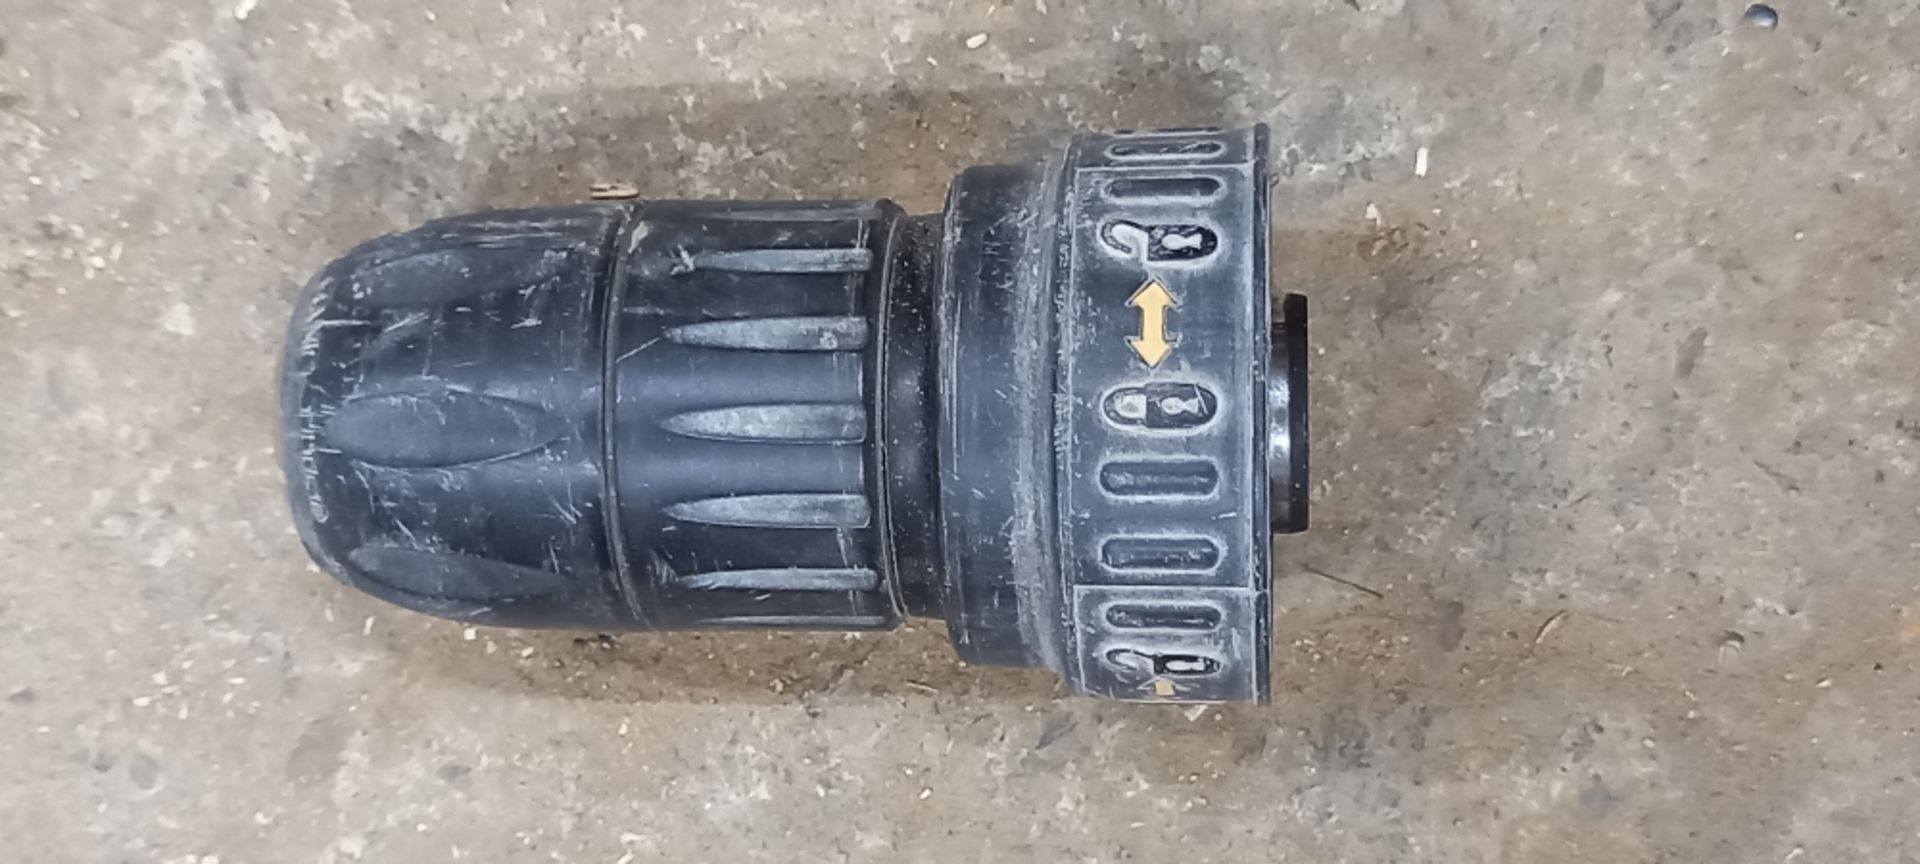 DeWalt D25134K Hammer Drill - Image 4 of 6